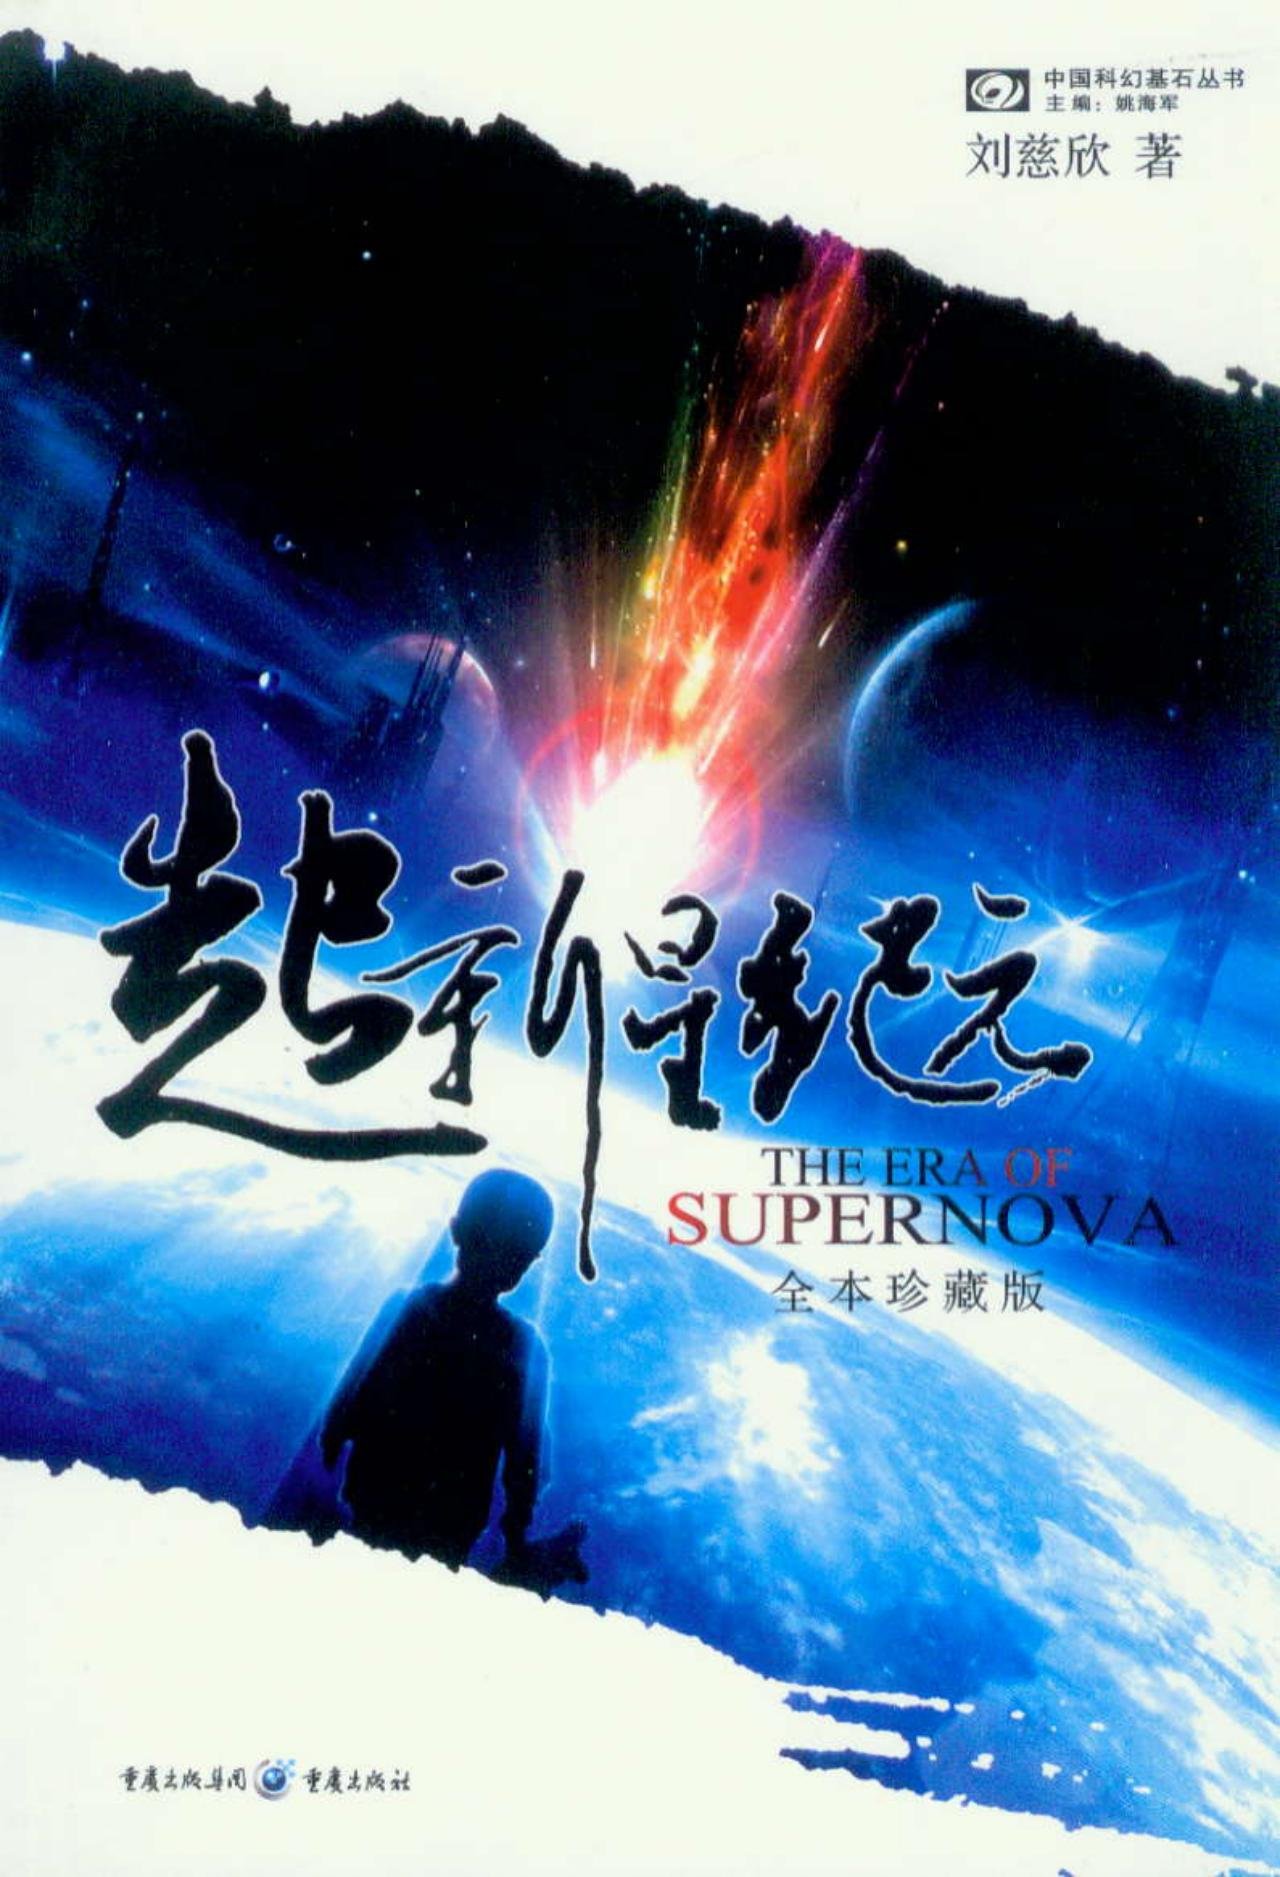 刘慈欣科幻作品《超新星纪元》将影视化 导演吕列参与改编